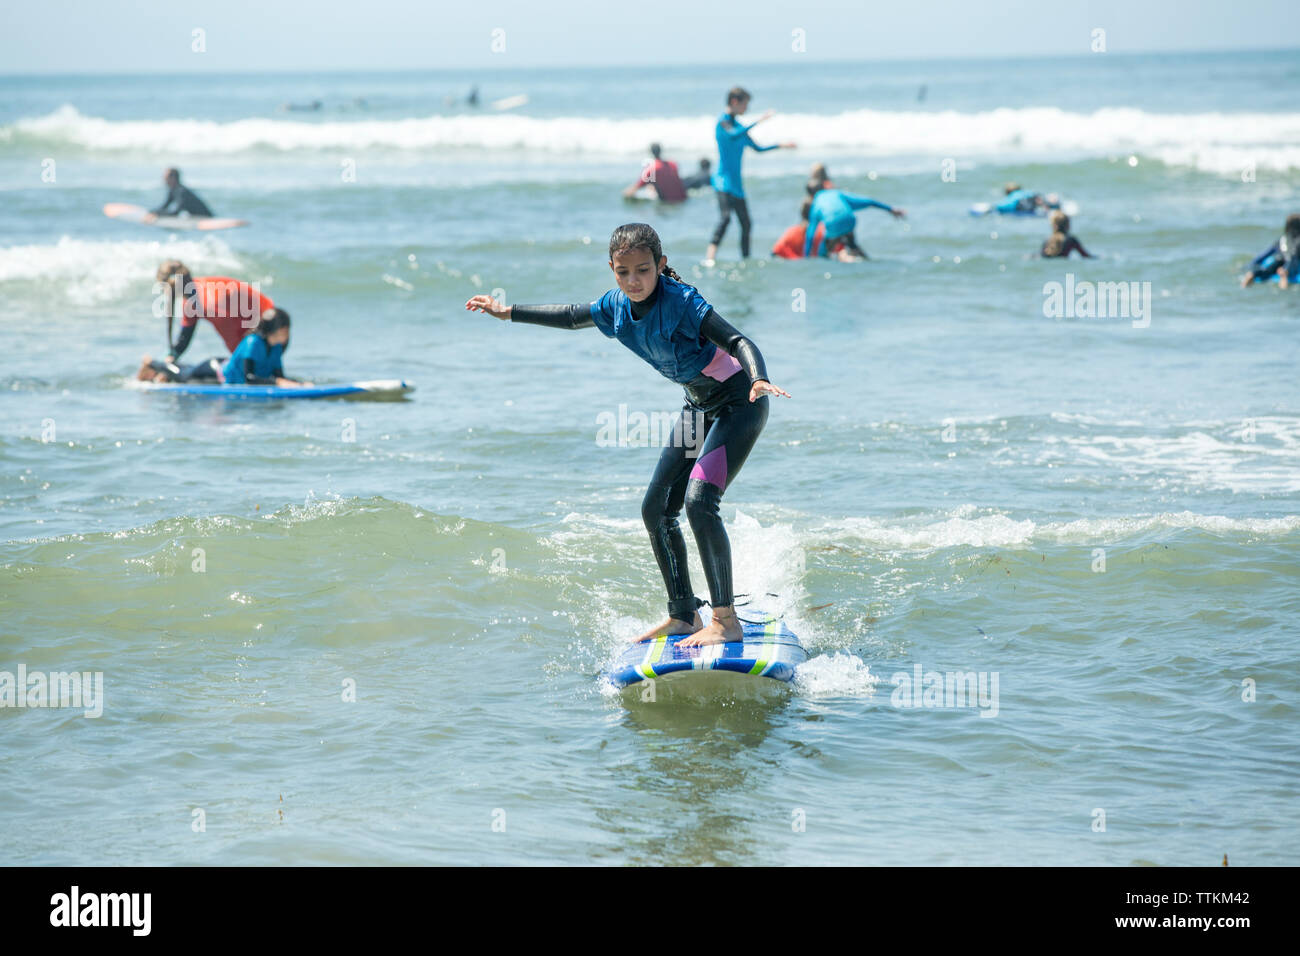 Full length of girl surfing on sea Stock Photo